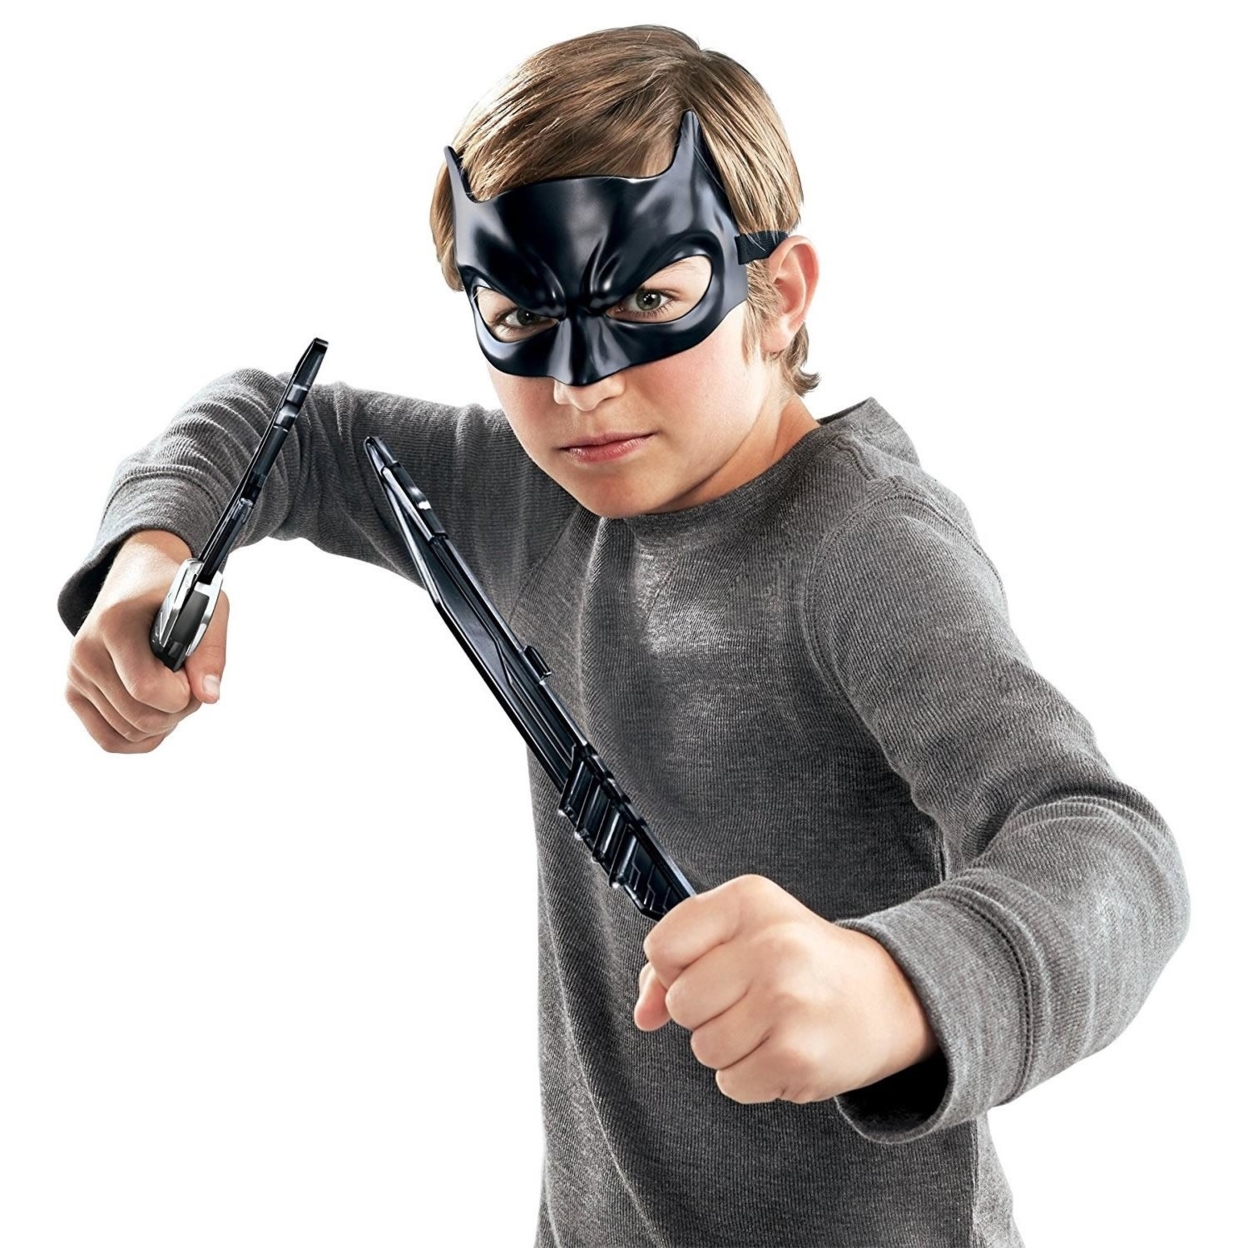 DC Justice League Batman Weapons Costume Accessory Pack Mattel